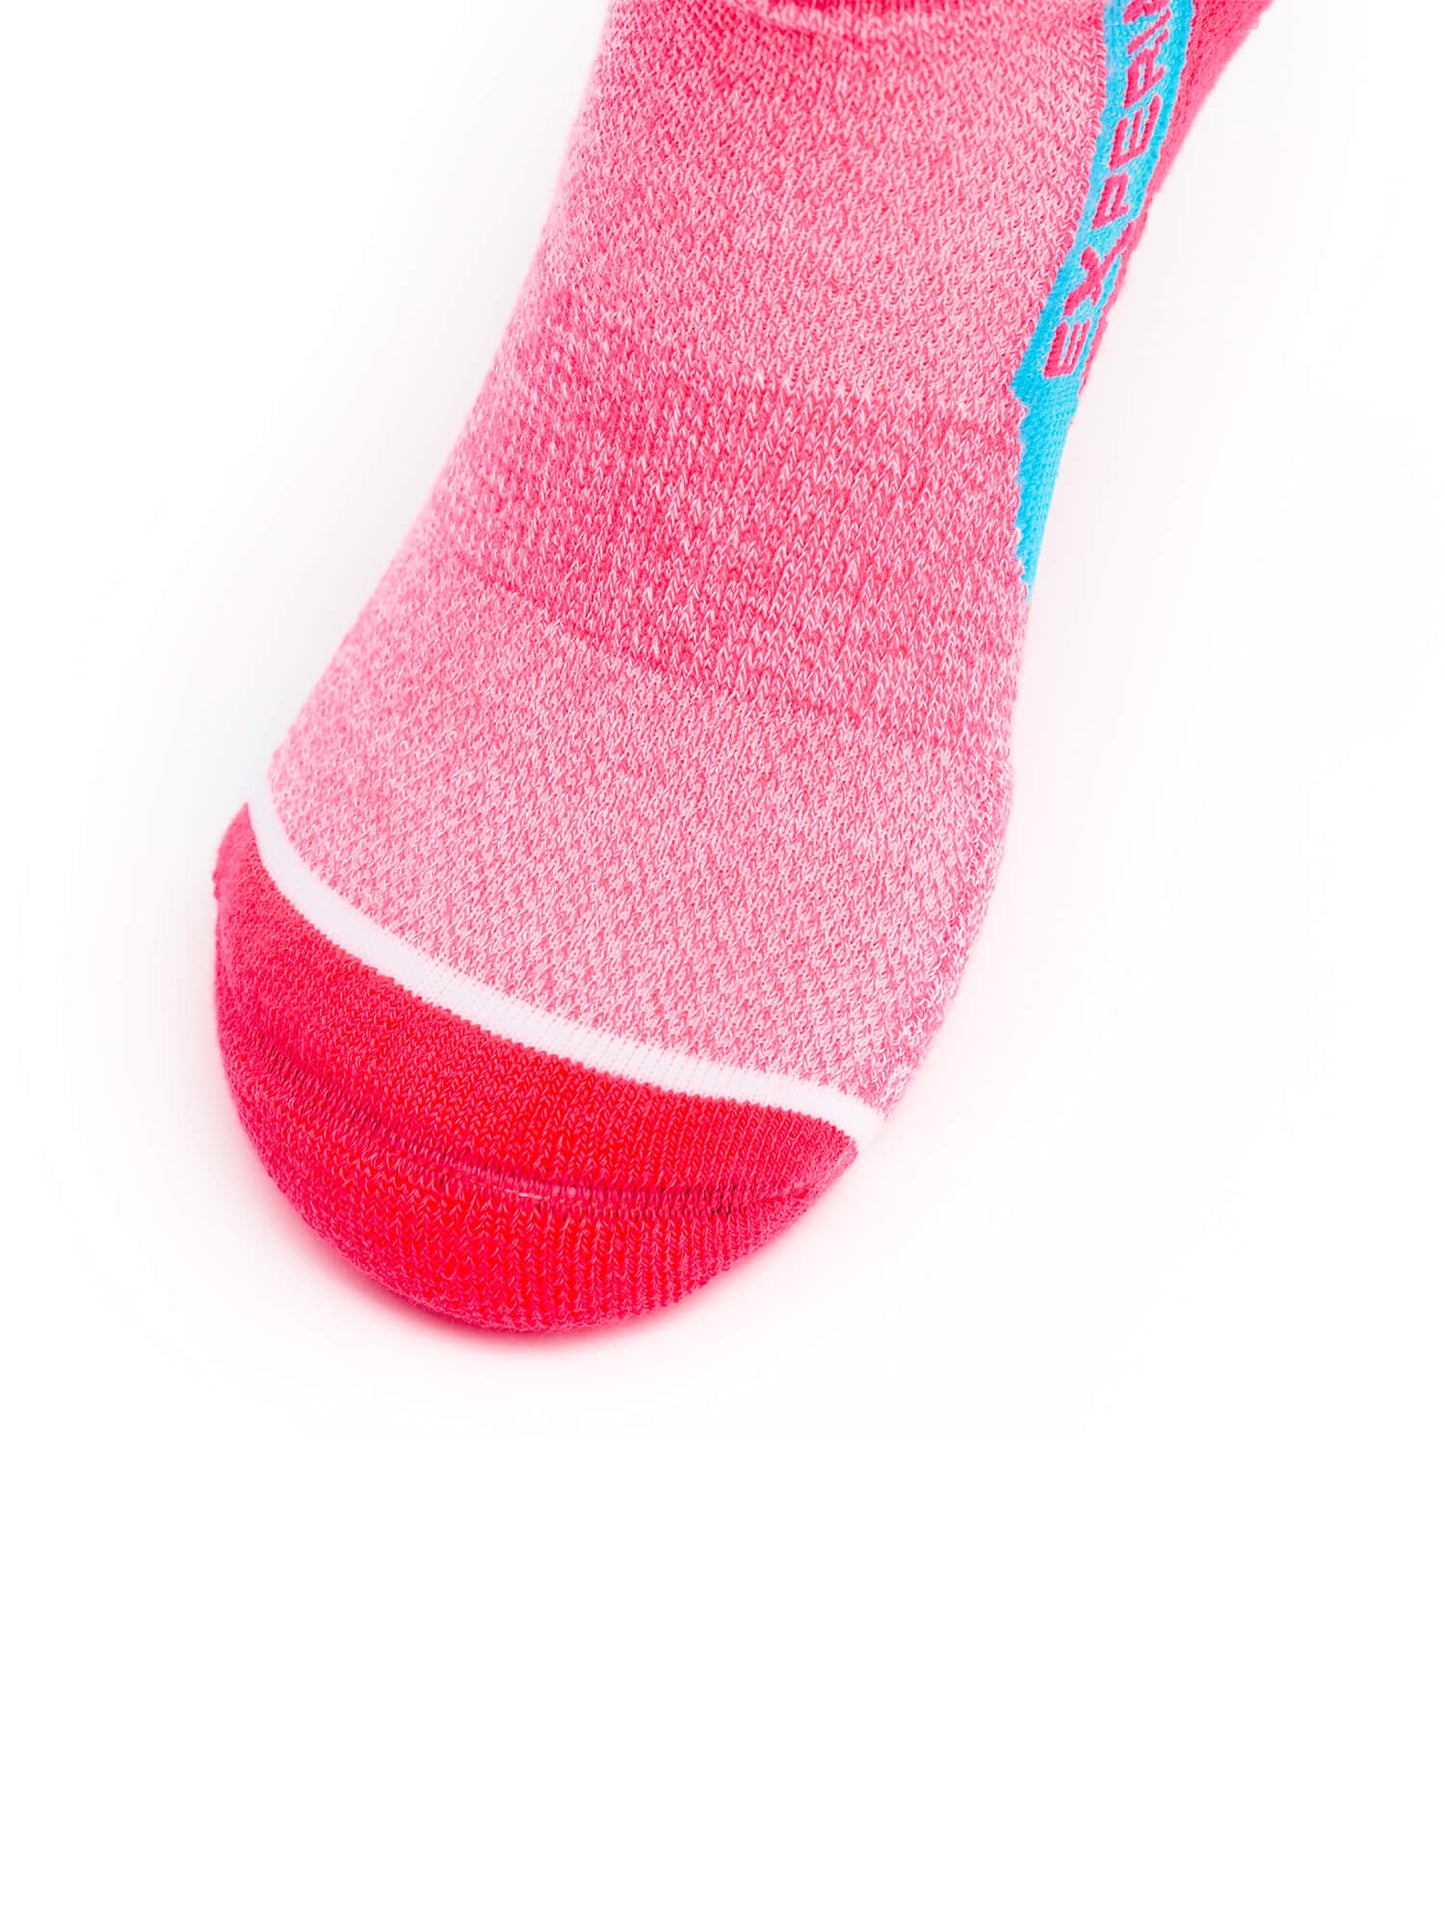 Toe of Thorlos Experia Repreve Low Cut Socks in Pink